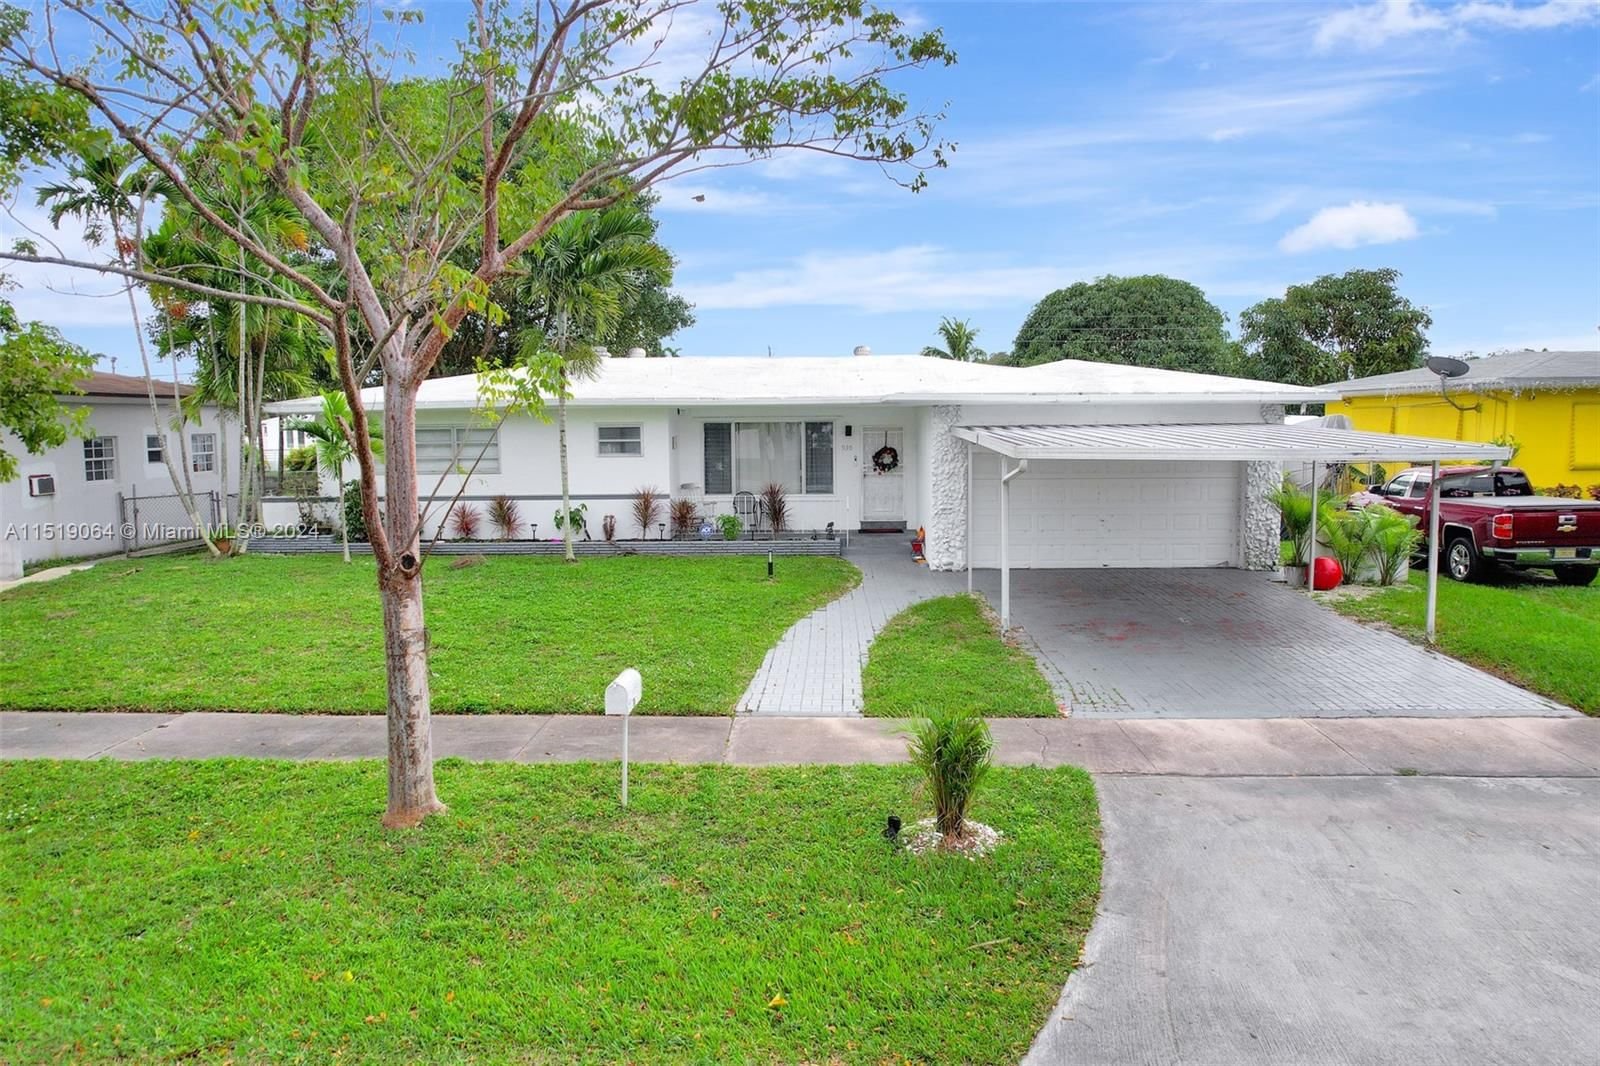 Real estate property located at 930 Little River Dr, Miami-Dade County, CRAVERO LAKE SHORE ESTATE, Miami, FL